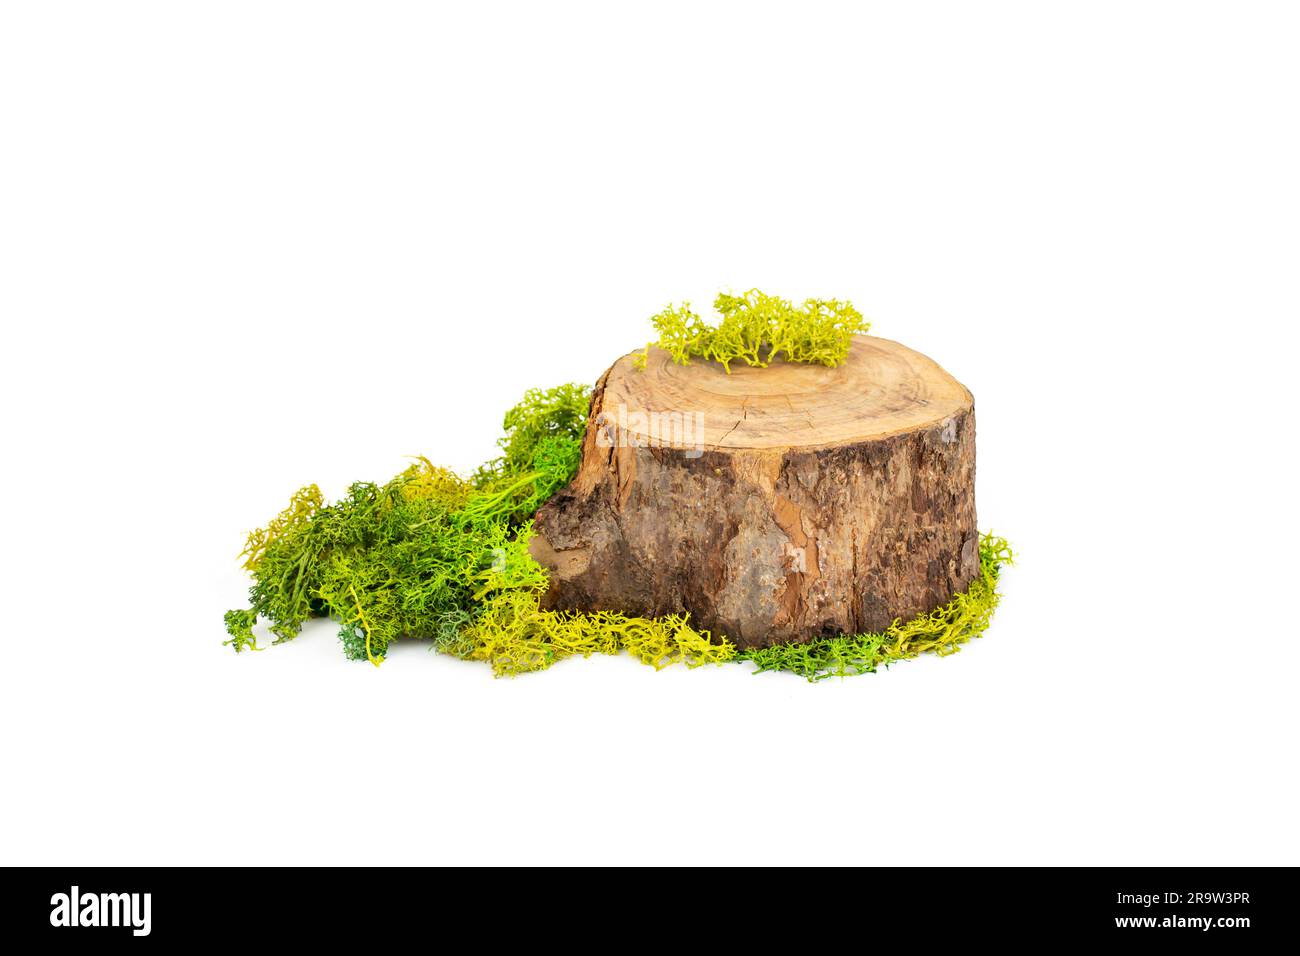 Sezione trasversale del tronco con lichene verde stabilizzato per la visualizzazione del prodotto, isolata su sfondo bianco Foto Stock